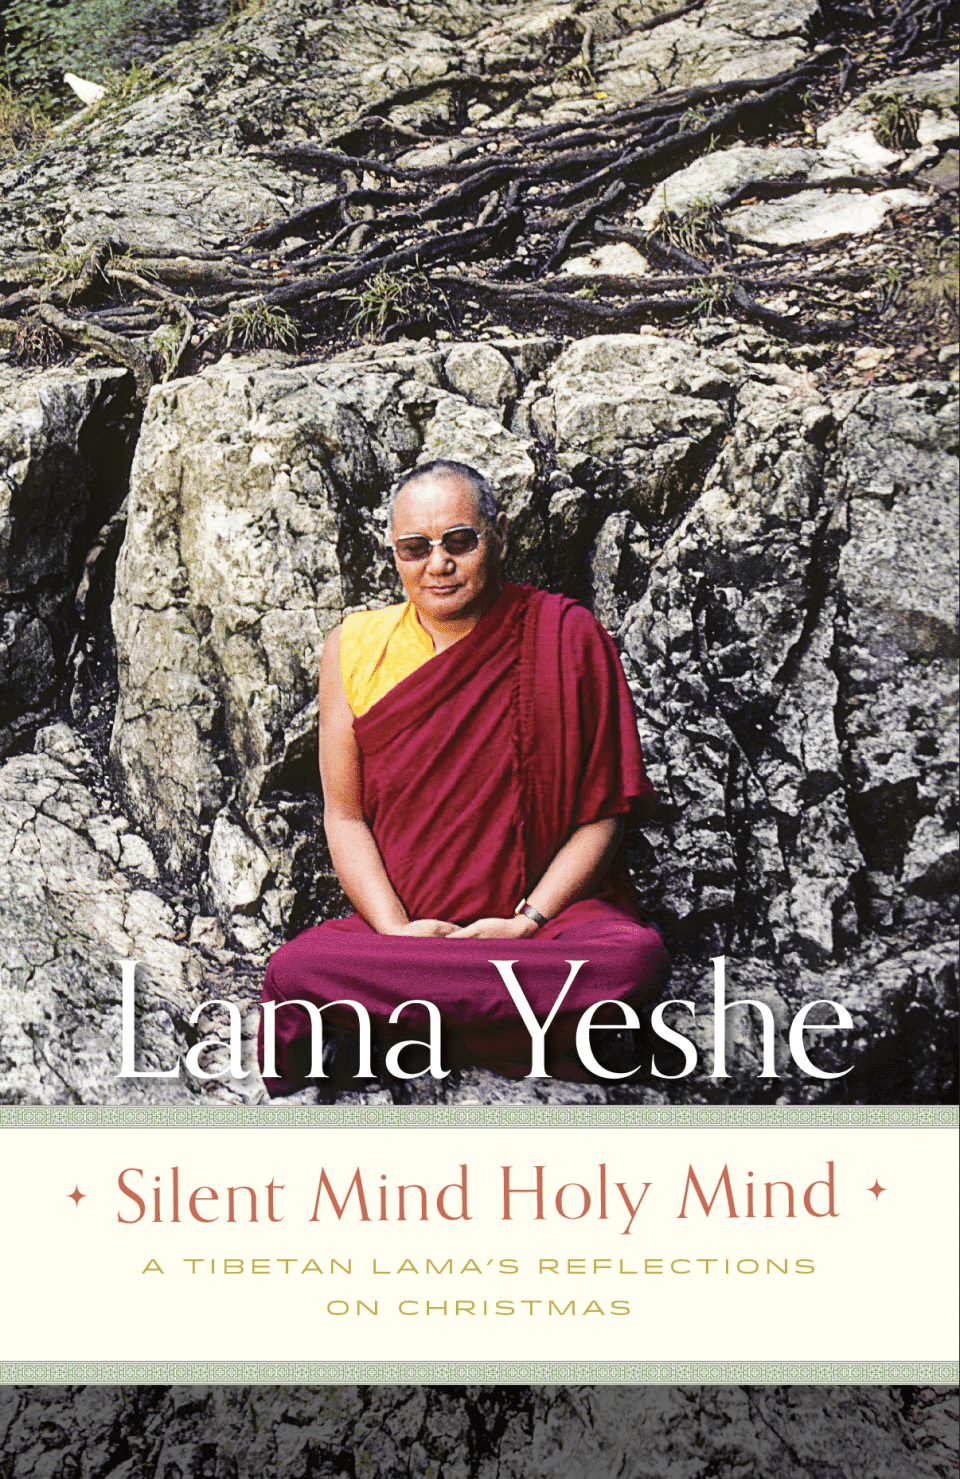 Silent Mind, Holy Mind: Lama Yeshe’s Reflections on Christmas